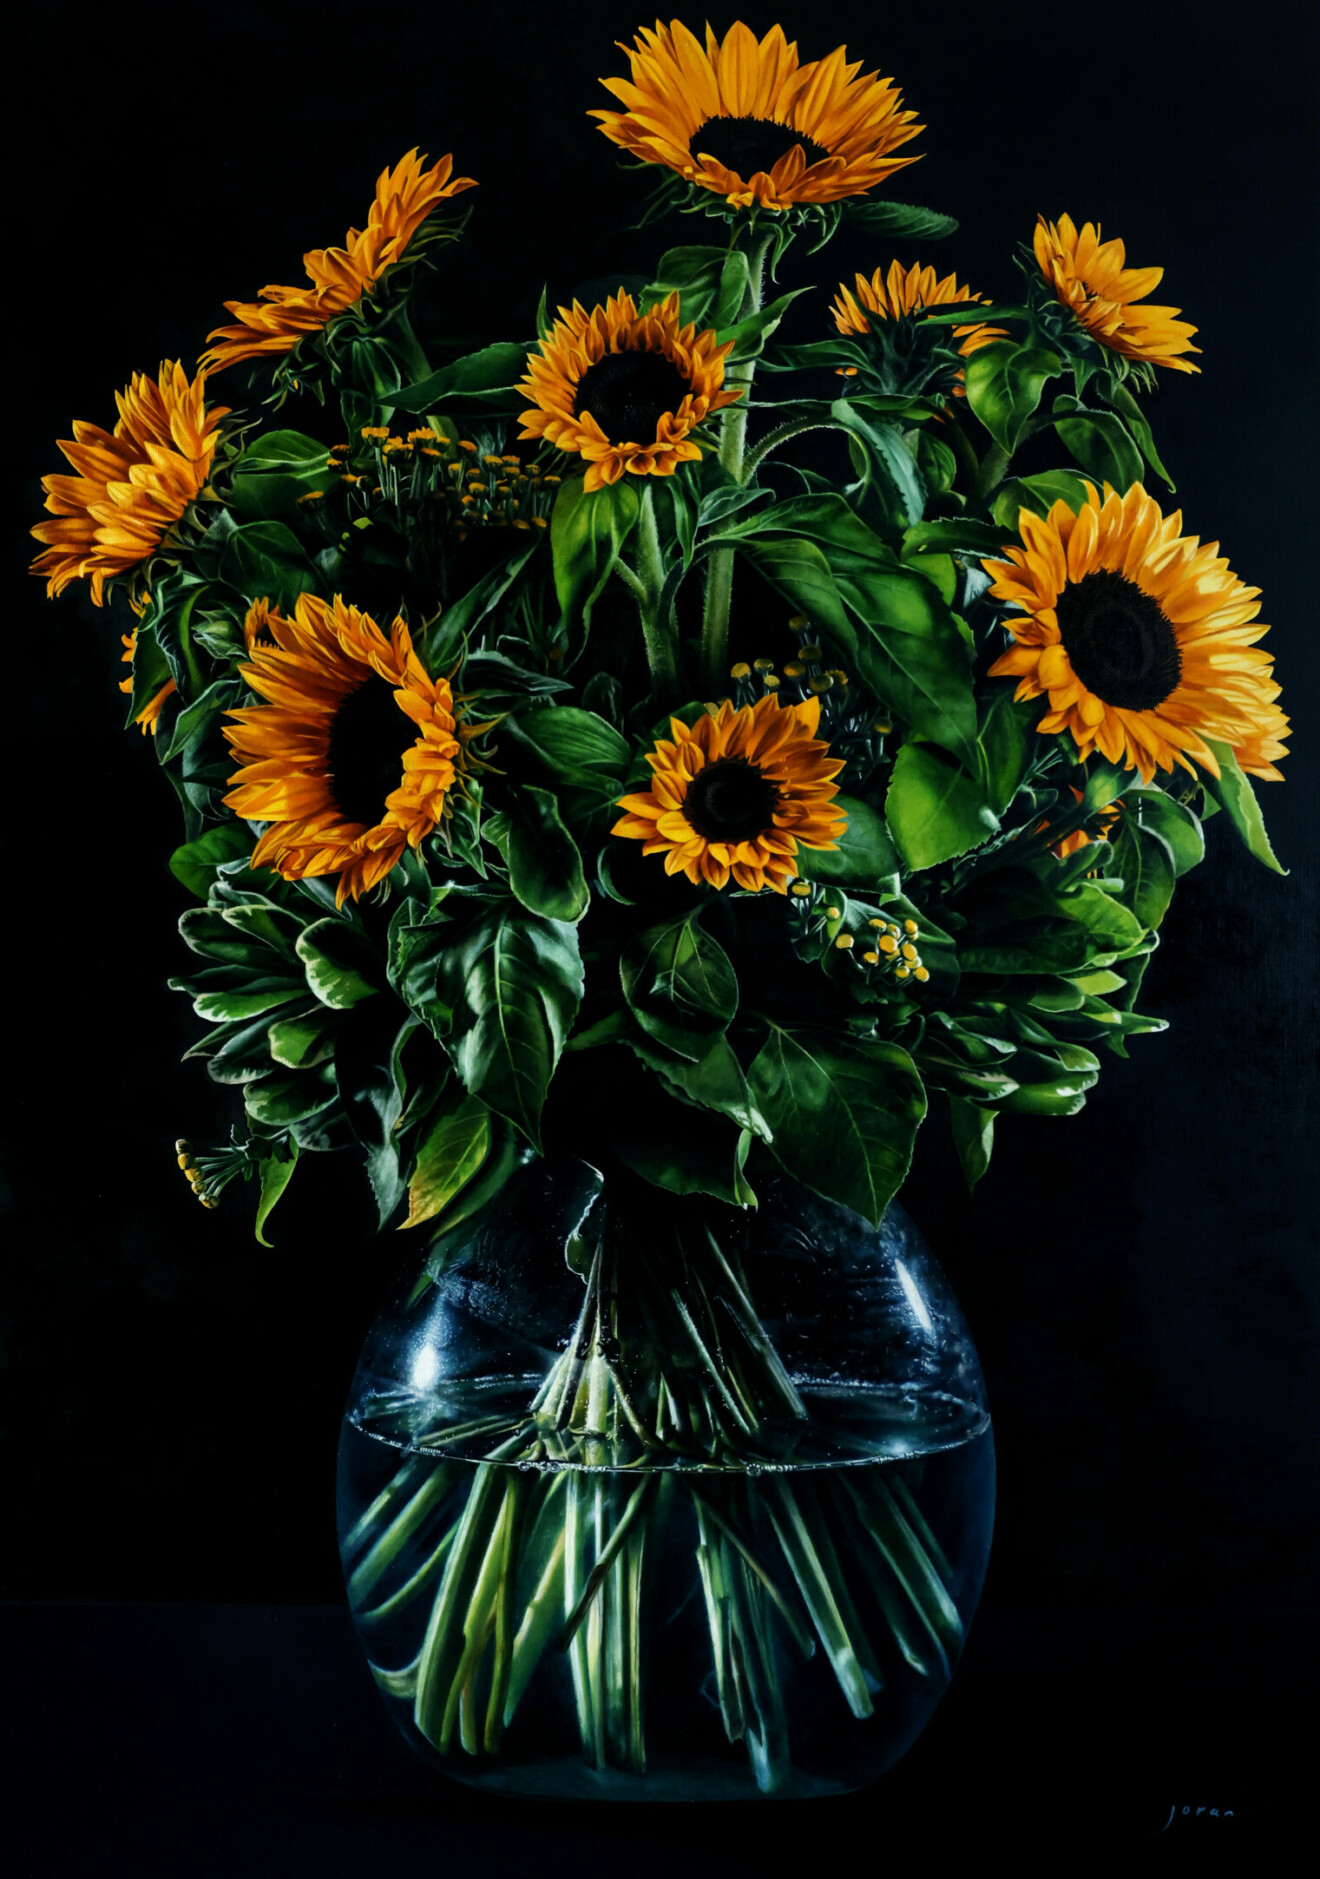 joran-van-der-haar-zonnebloemen-olieverf-op-linnen-170x120cm-2021